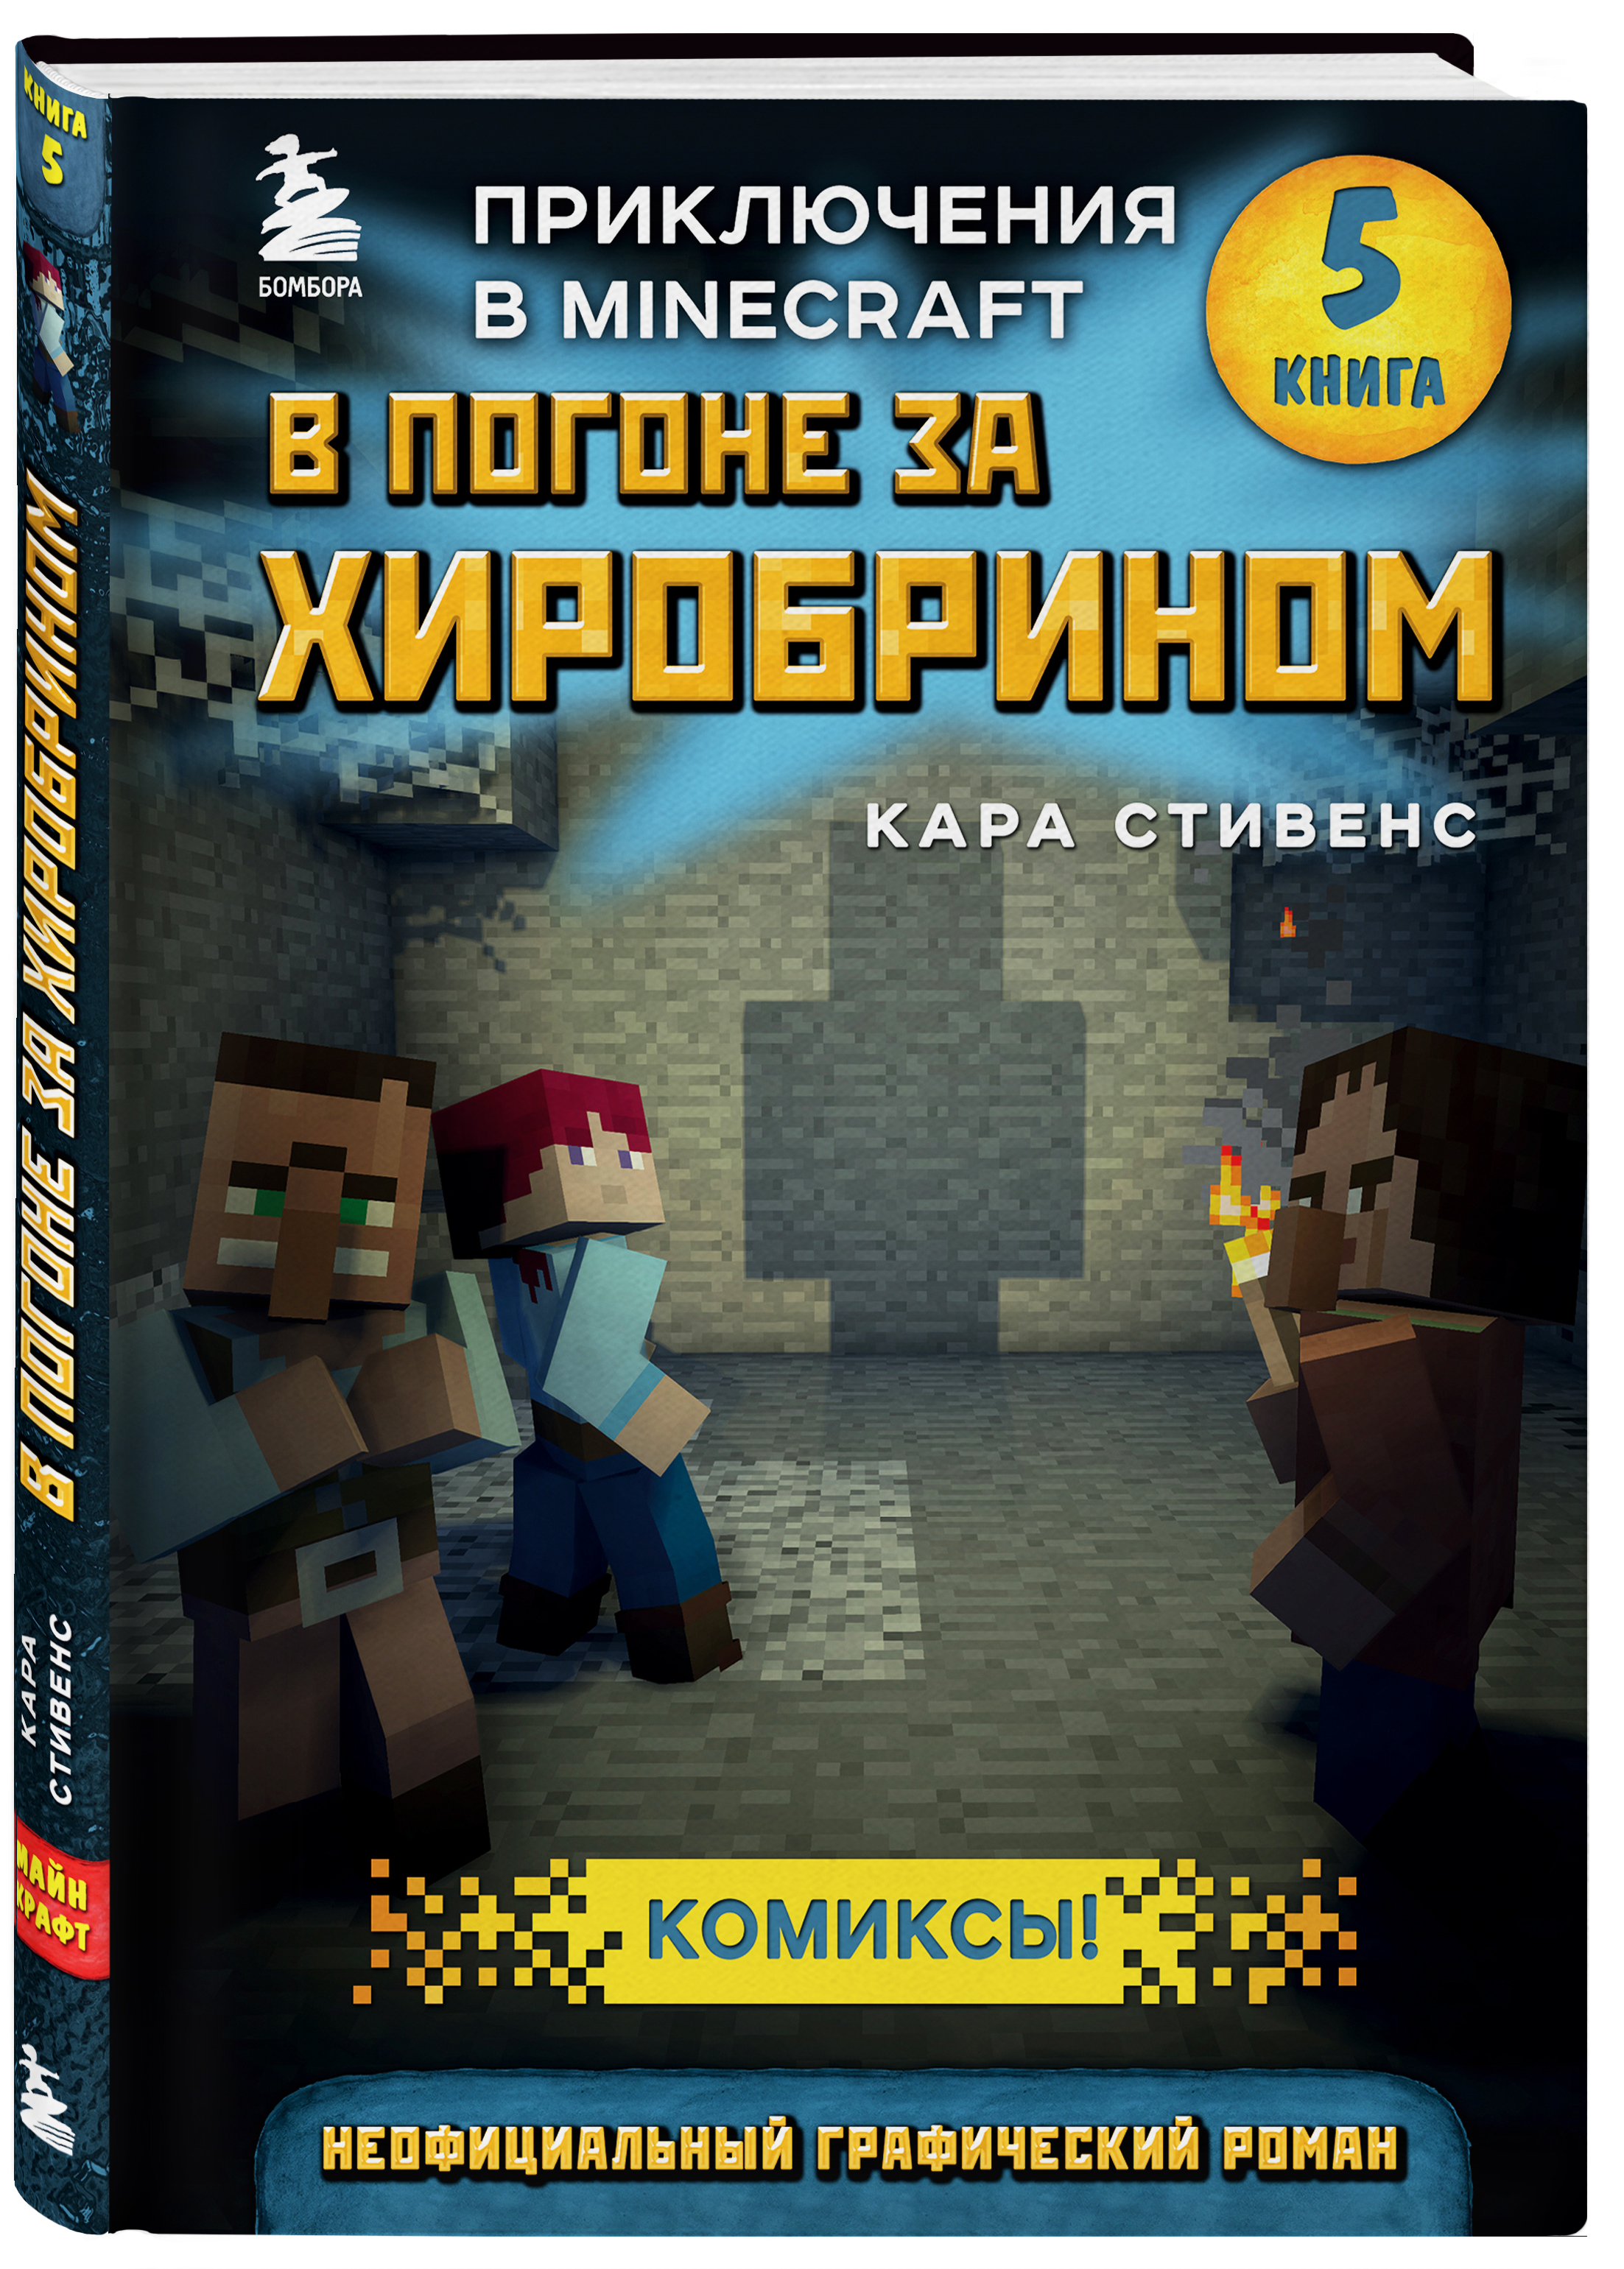 Комикс Приключения в Minecraft: В погоне за Хиробрином. Книга 5 от 1С Интерес